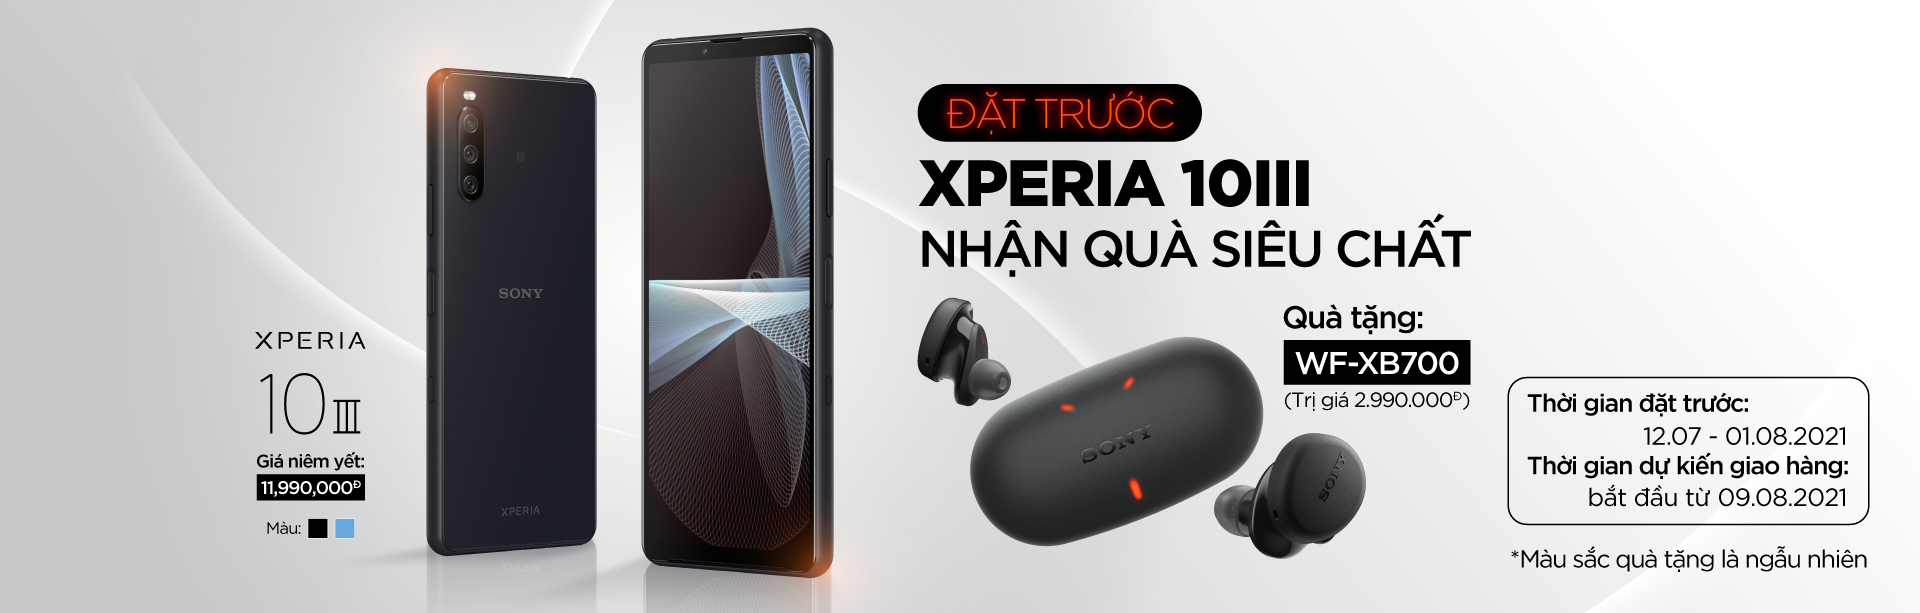 Sony Xperia 1 III và Xperia 10 III chính thức ra mắt tại Việt Nam cùng chương trình đặt trước hấp dẫn